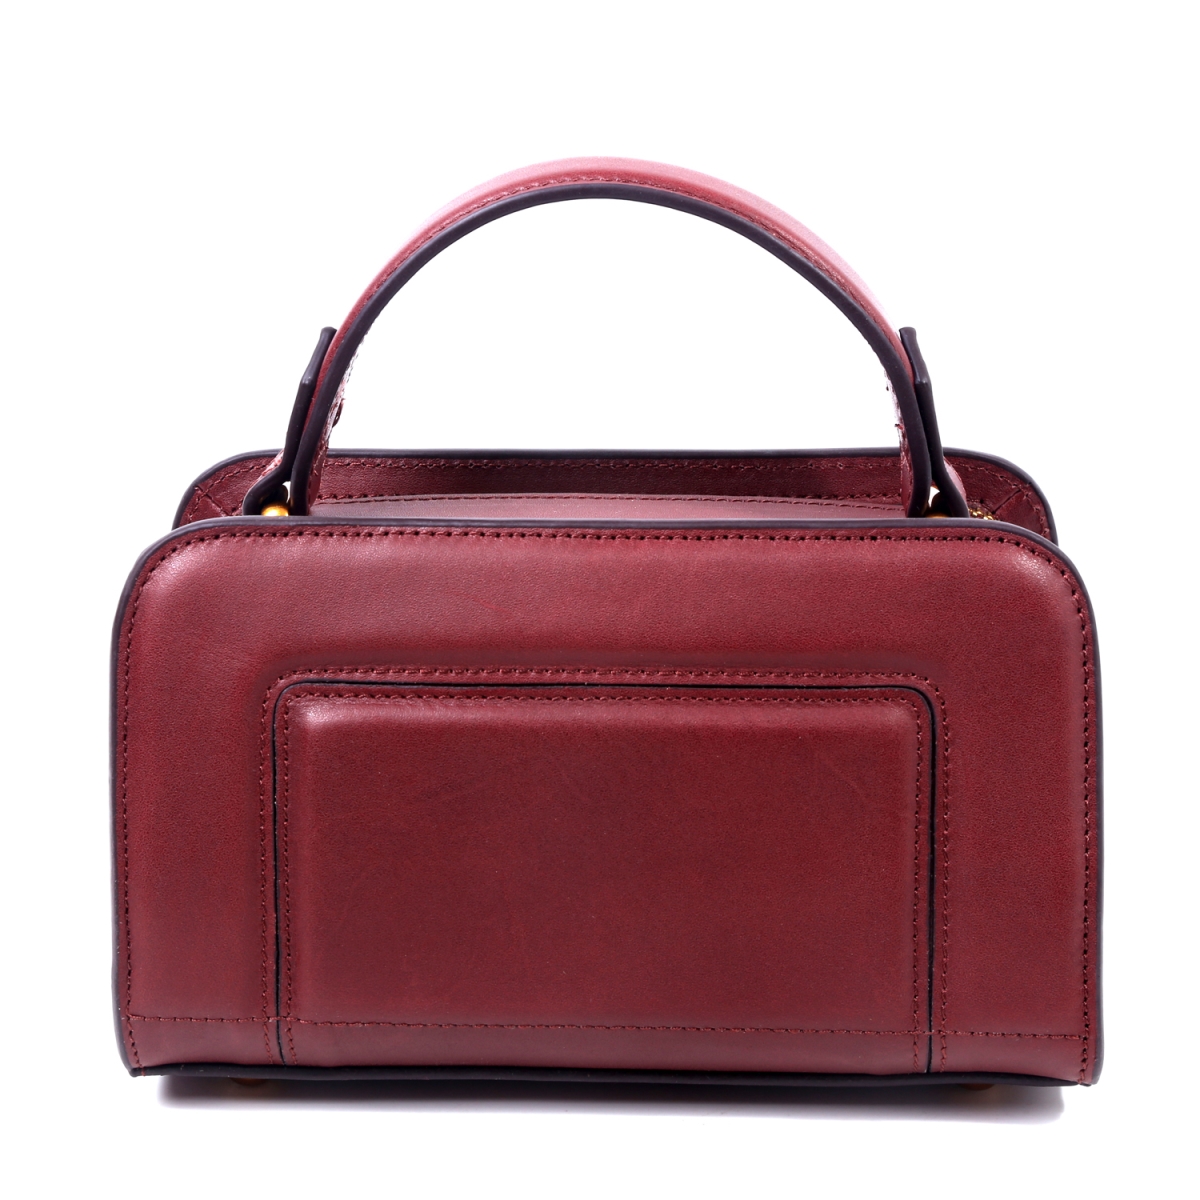 Fe8001-claret Genuine Leather Ashley Satchel - Claret